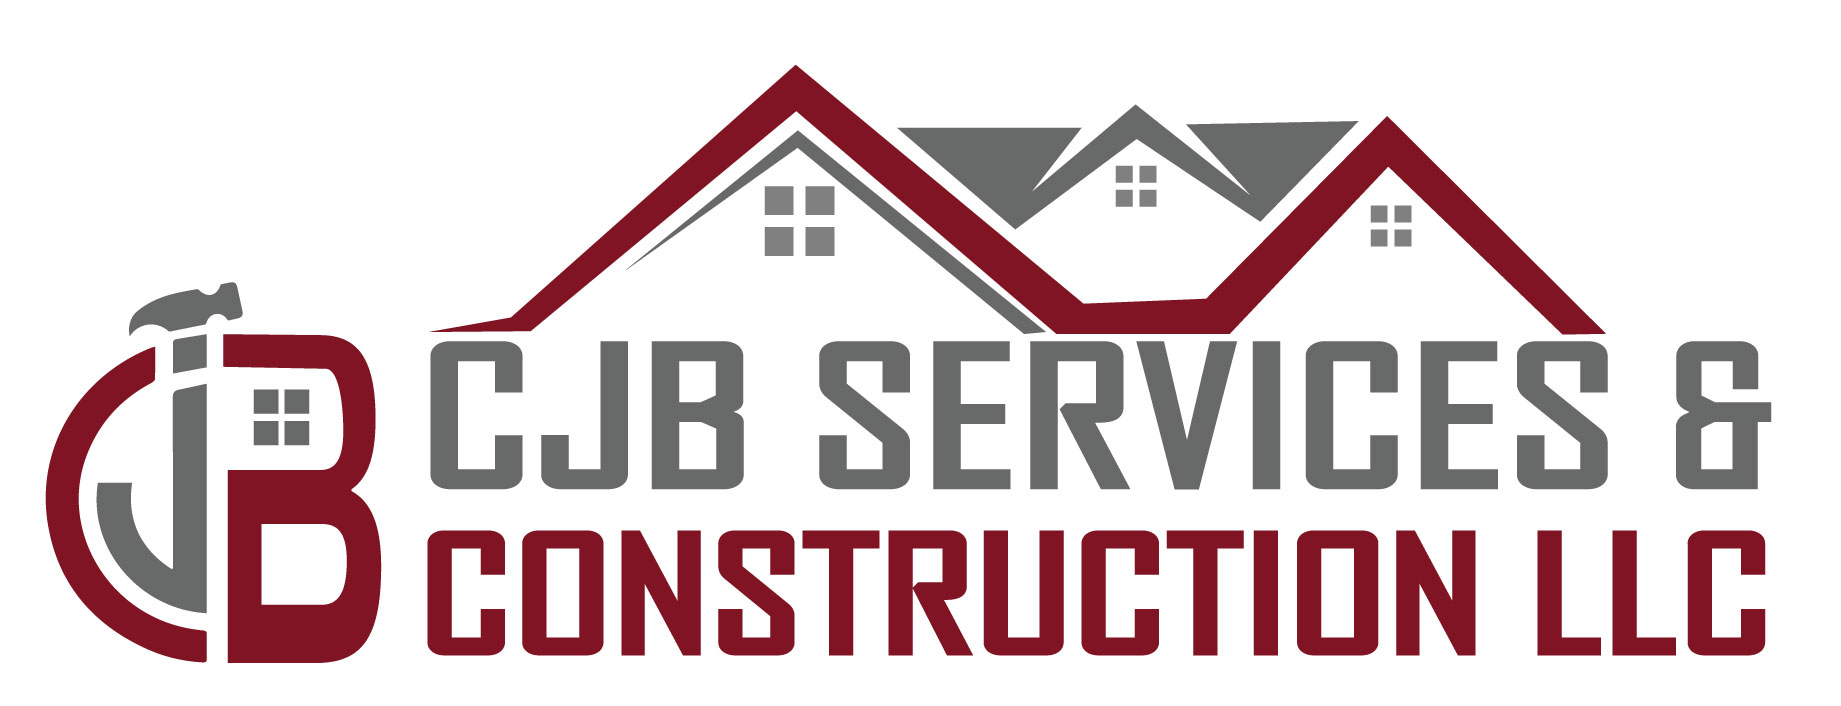 CJB Services & Construction LLC